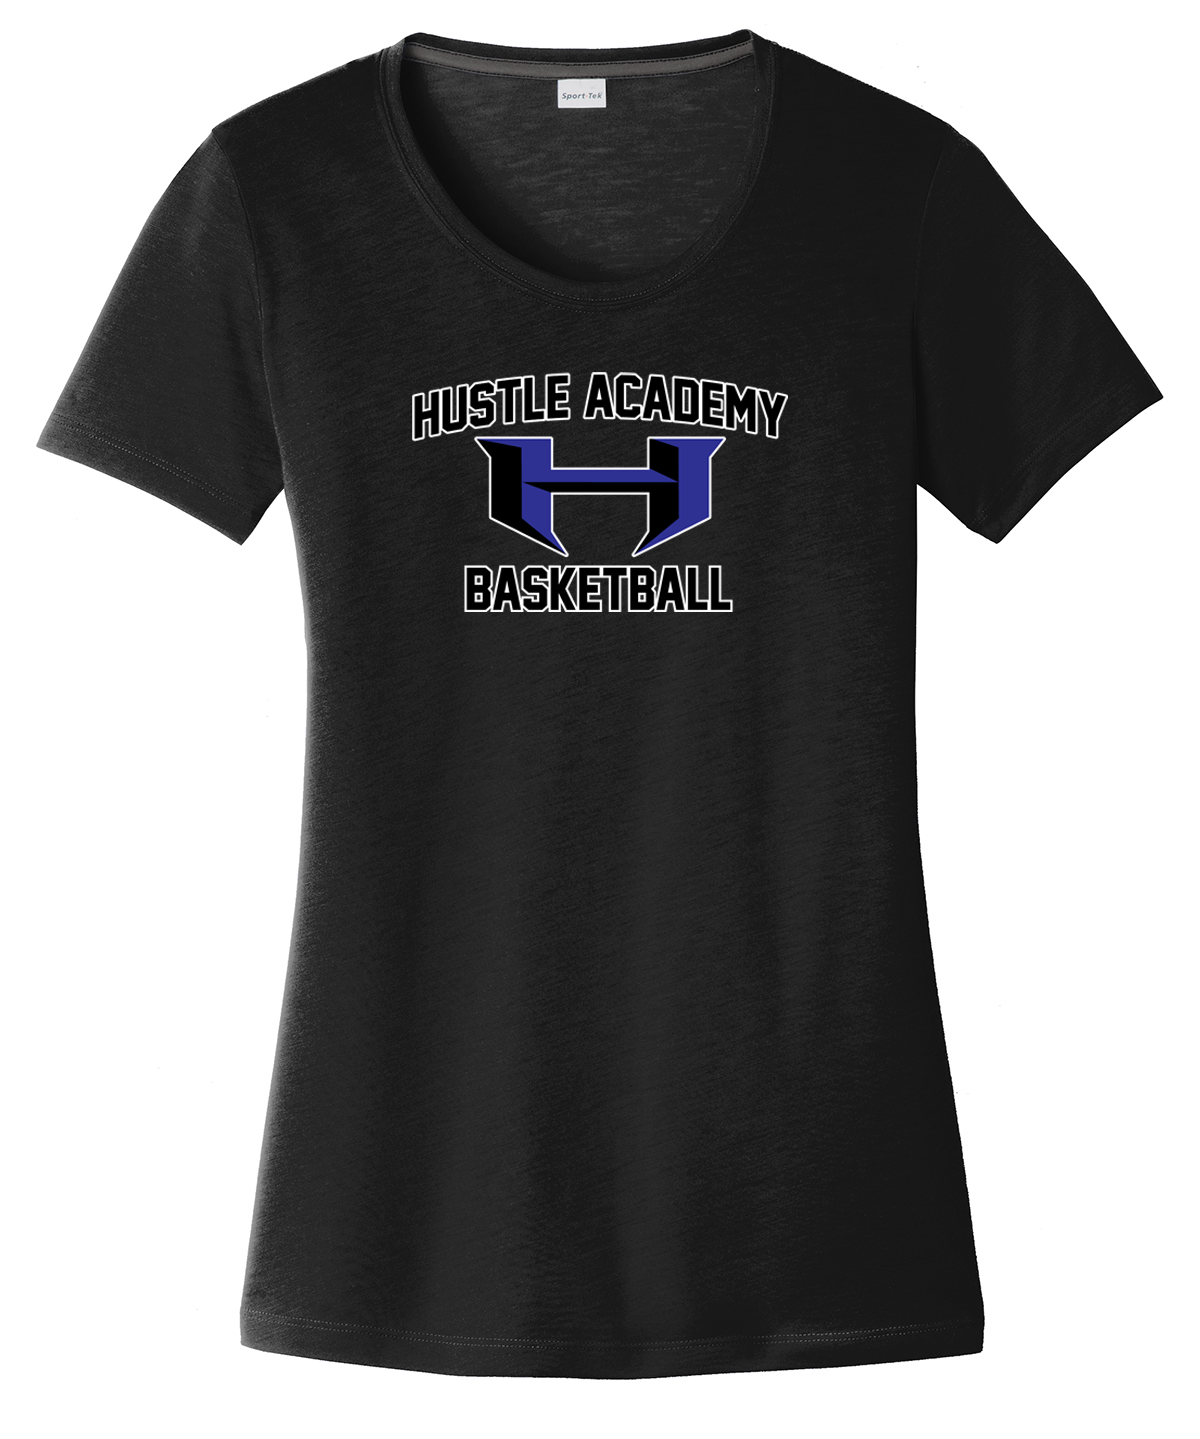 Hustle Academy Basketball  Women's CottonTouch Performance T-Shirt